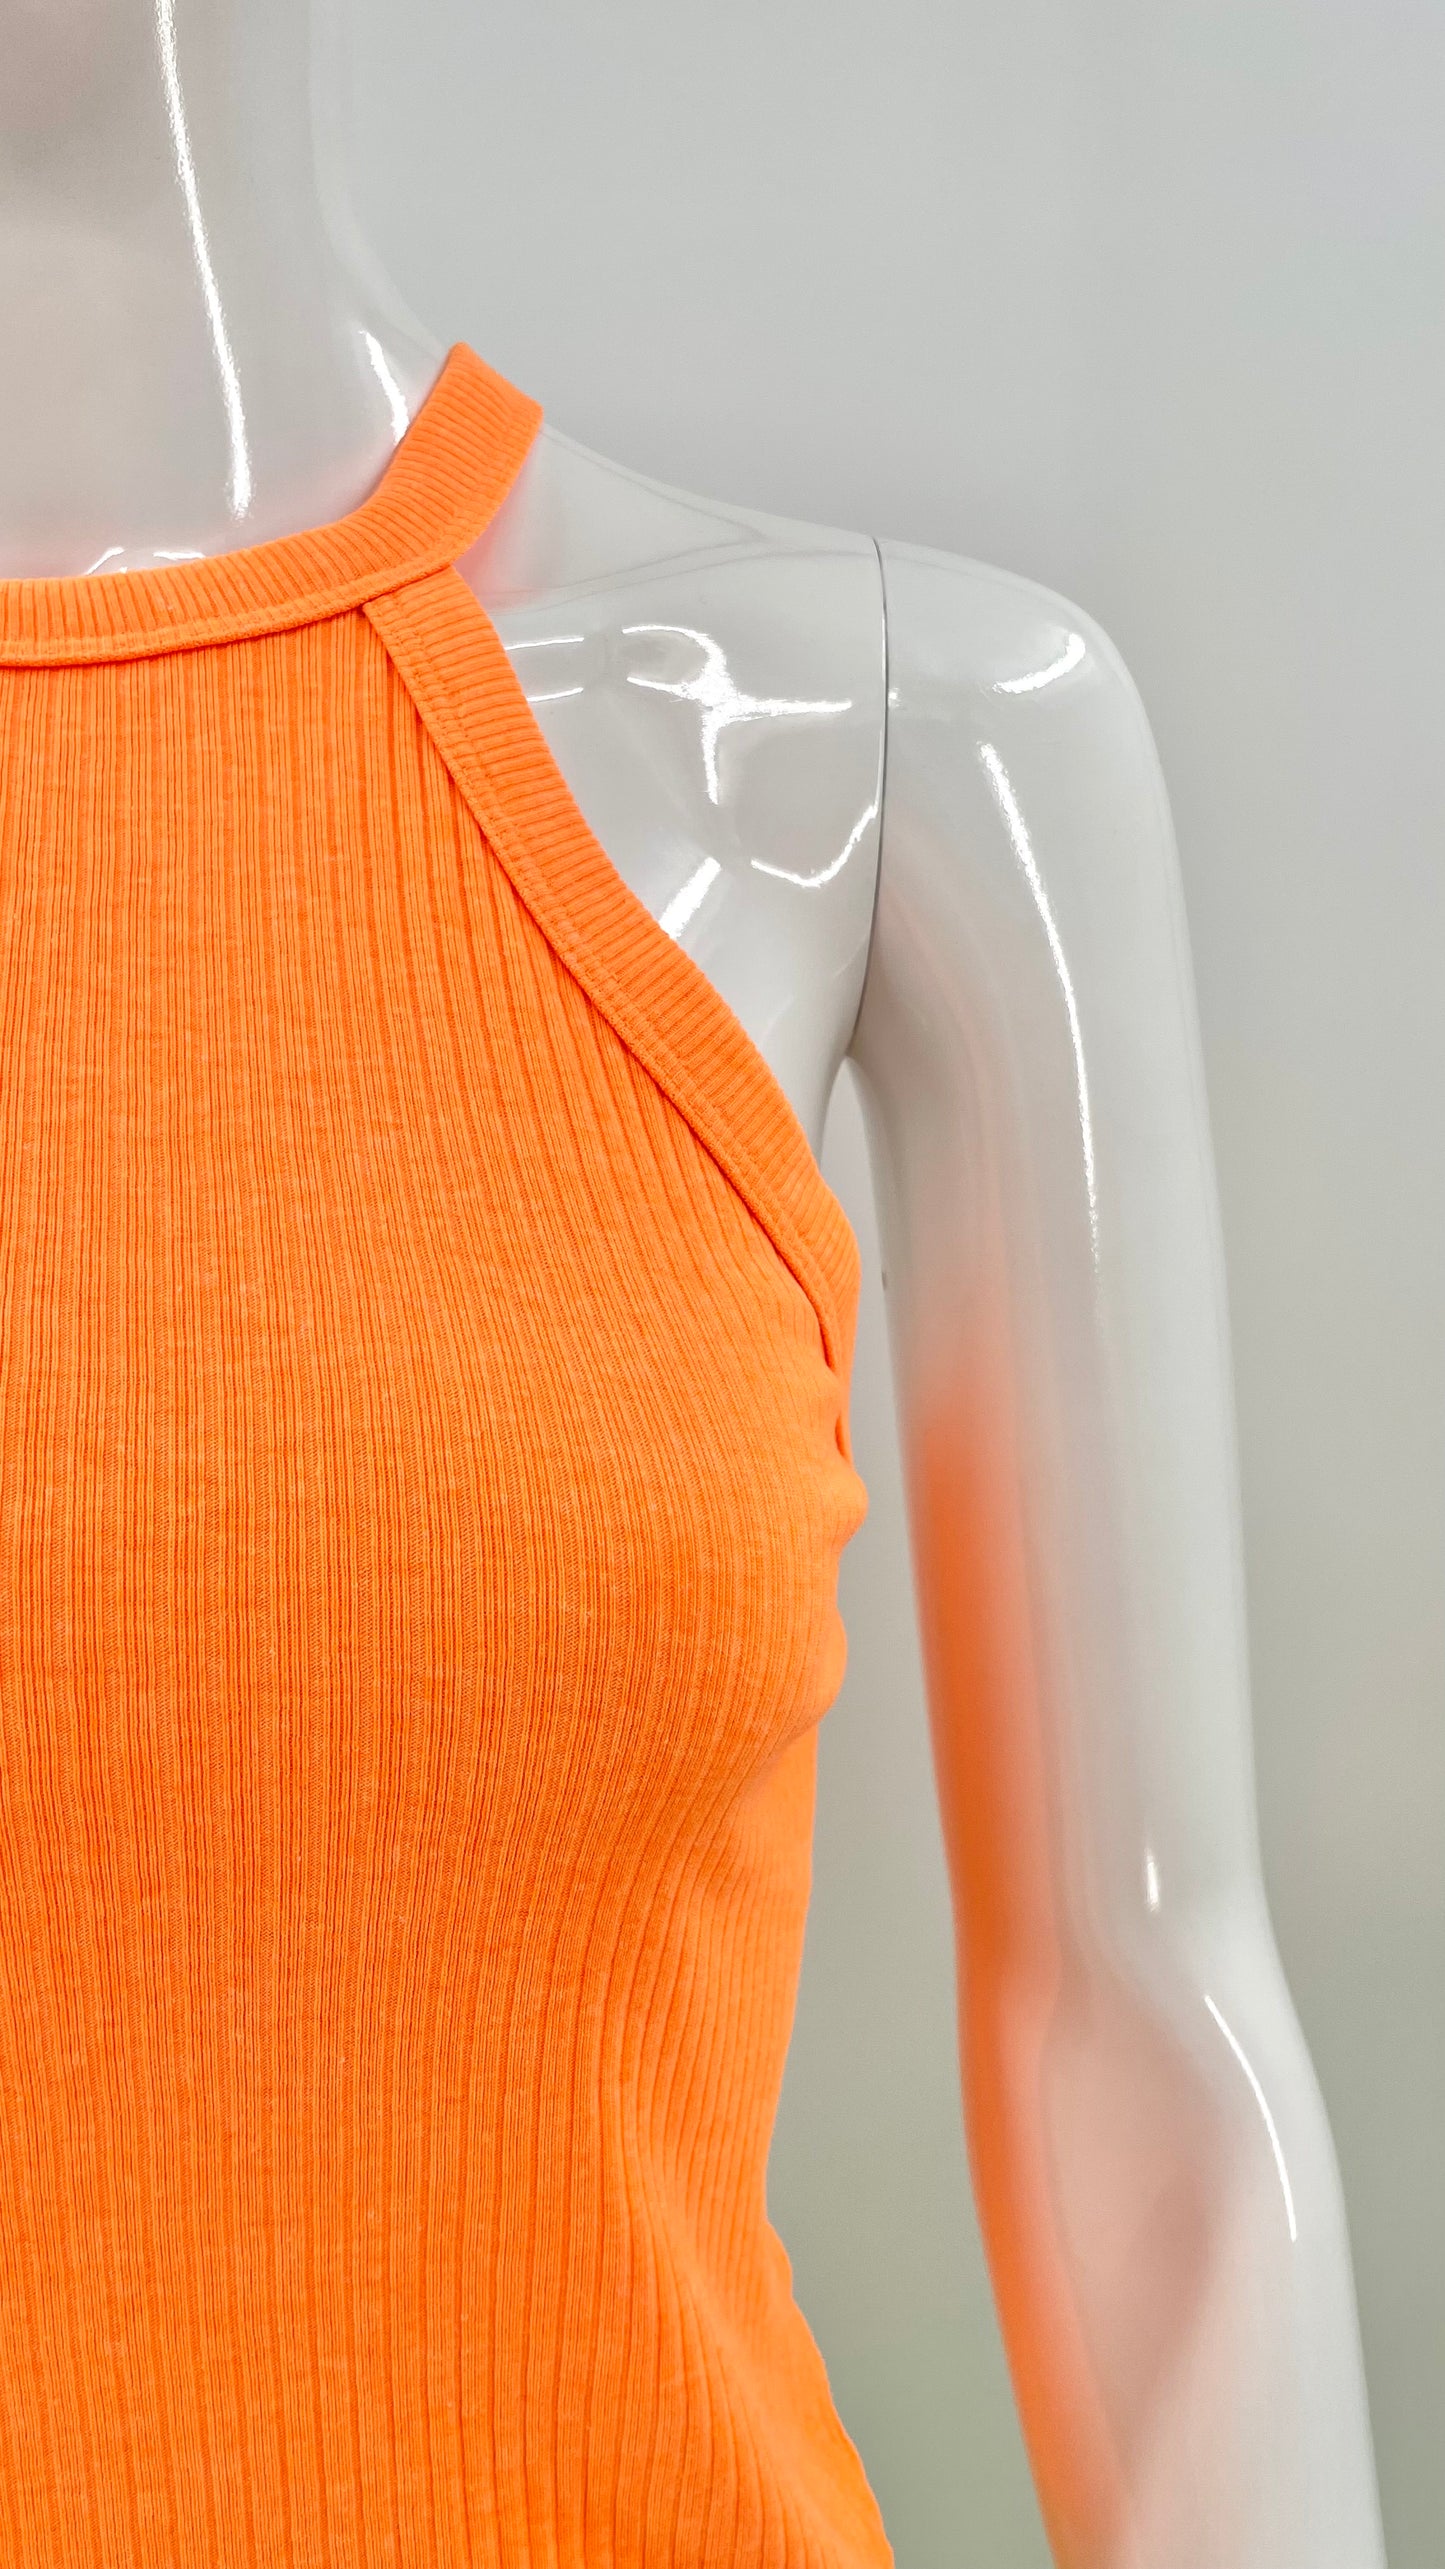 Pre-Loved neon orange knit halter top - Size L